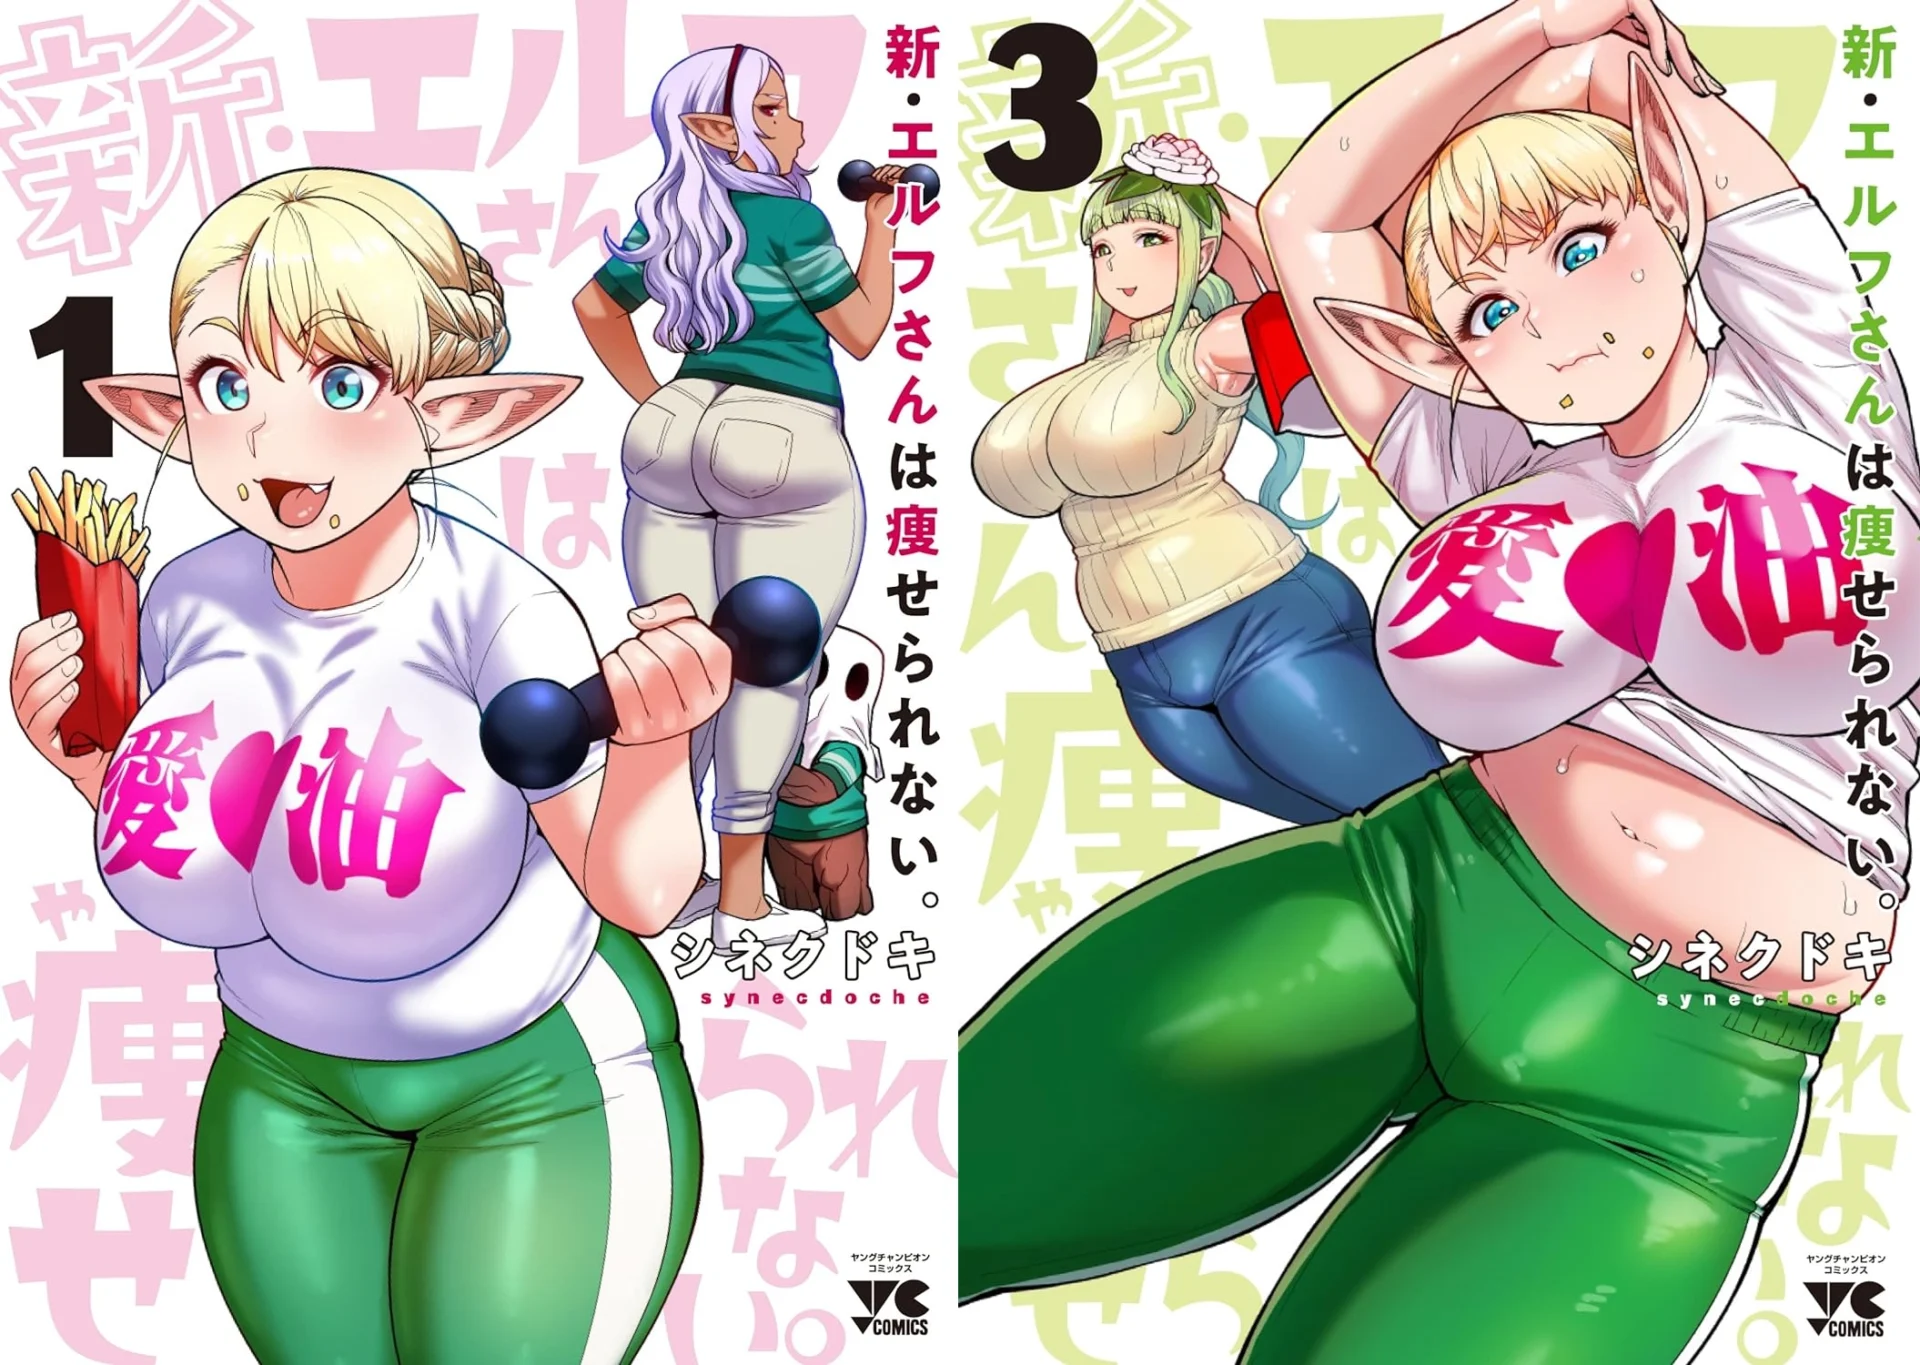 new plus-sized elf manga